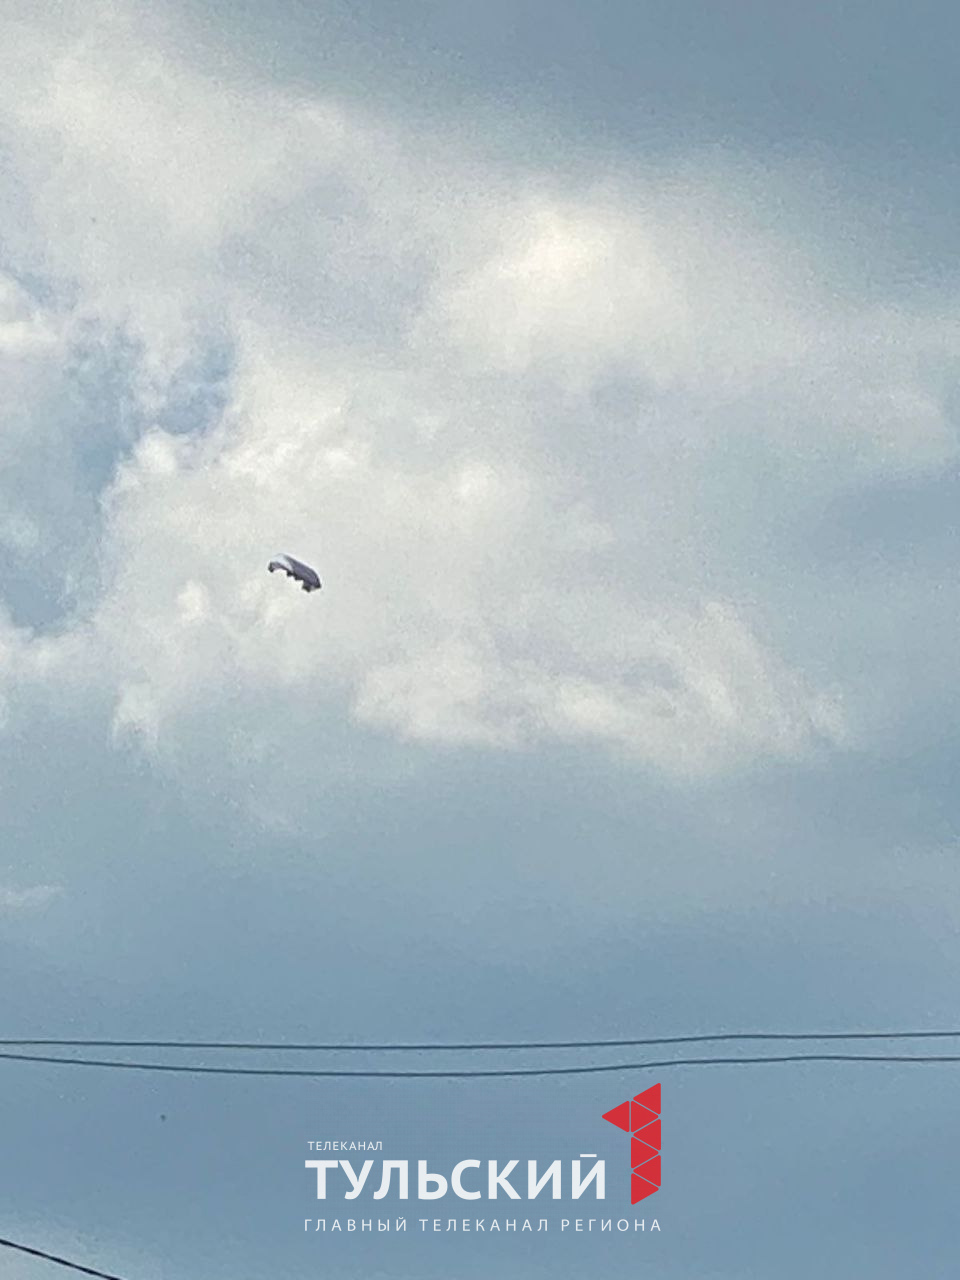 Появились новые фото неизвестного летающего предмета в небе над Тулой